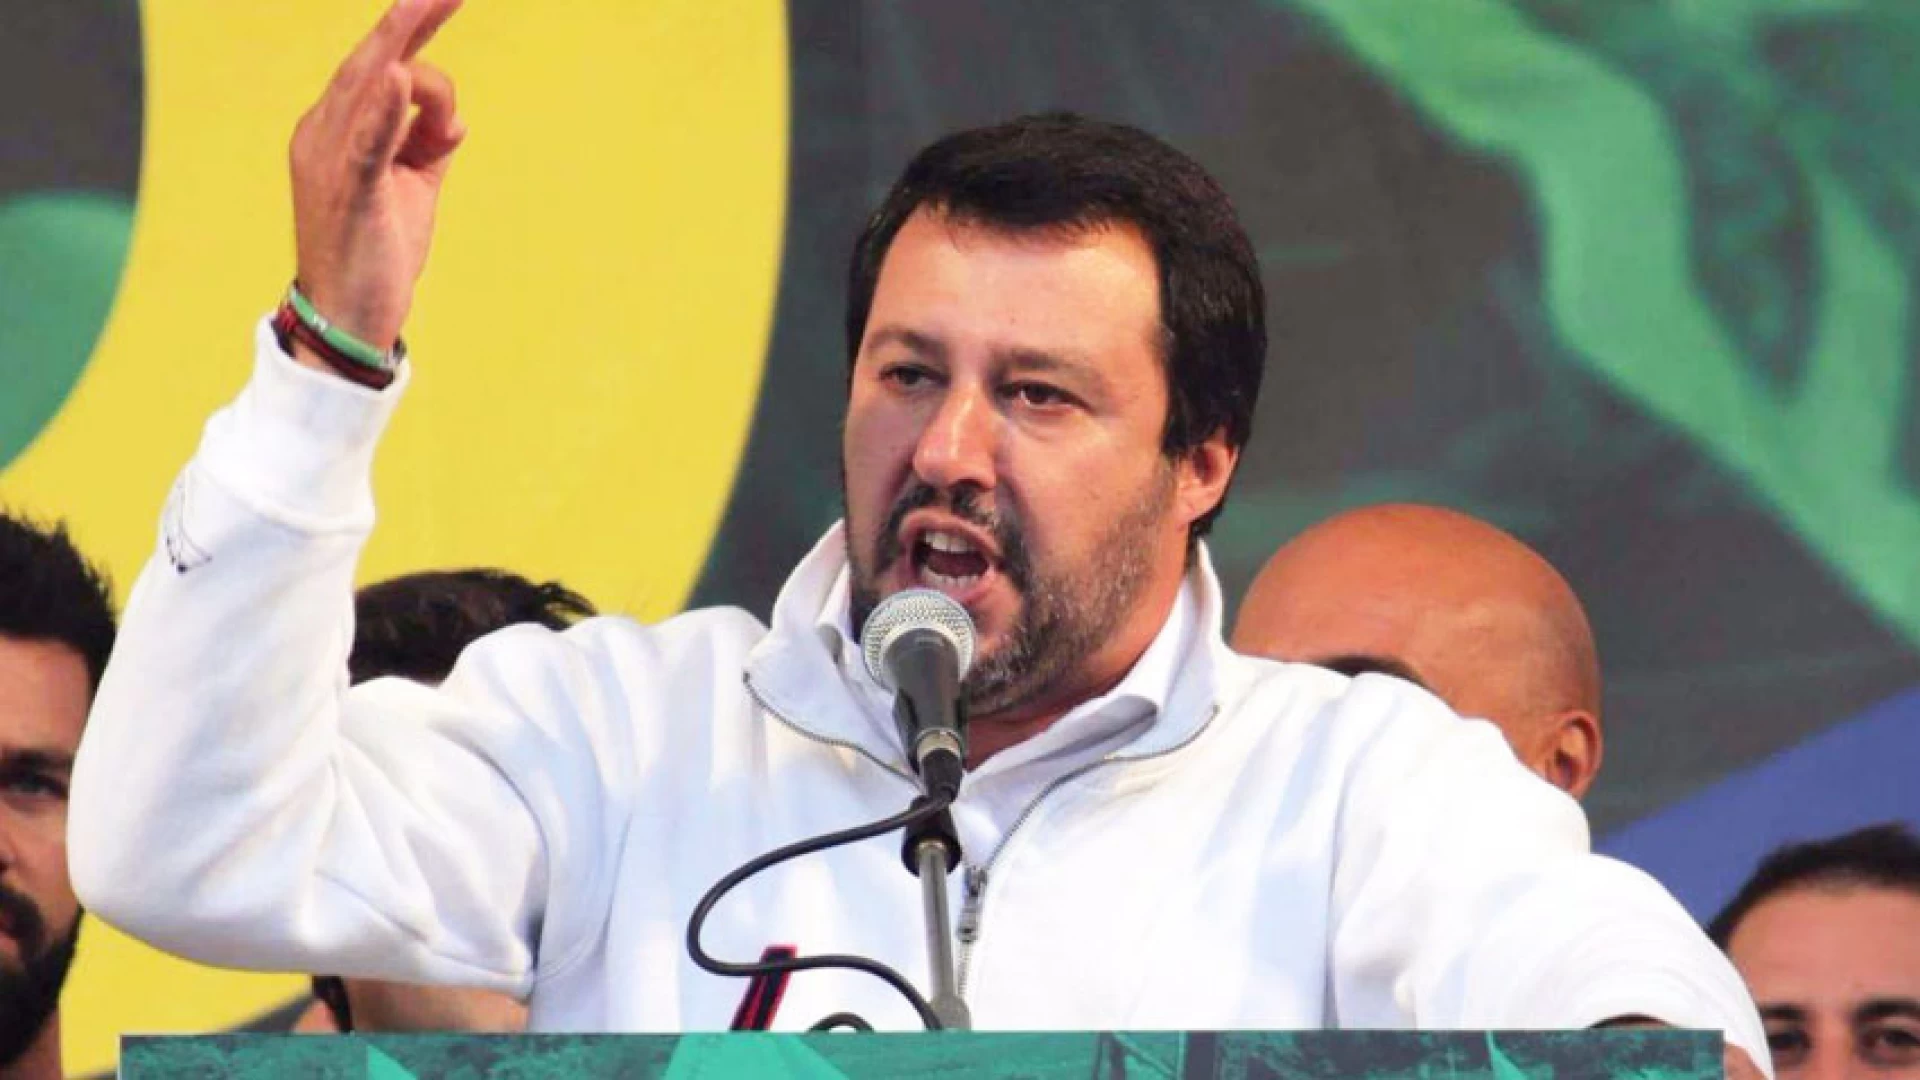 Rissa tra migranti: interviene Salvini. "Servono ruspe e sgomberi per sanare la situazione anche ad Isernia".